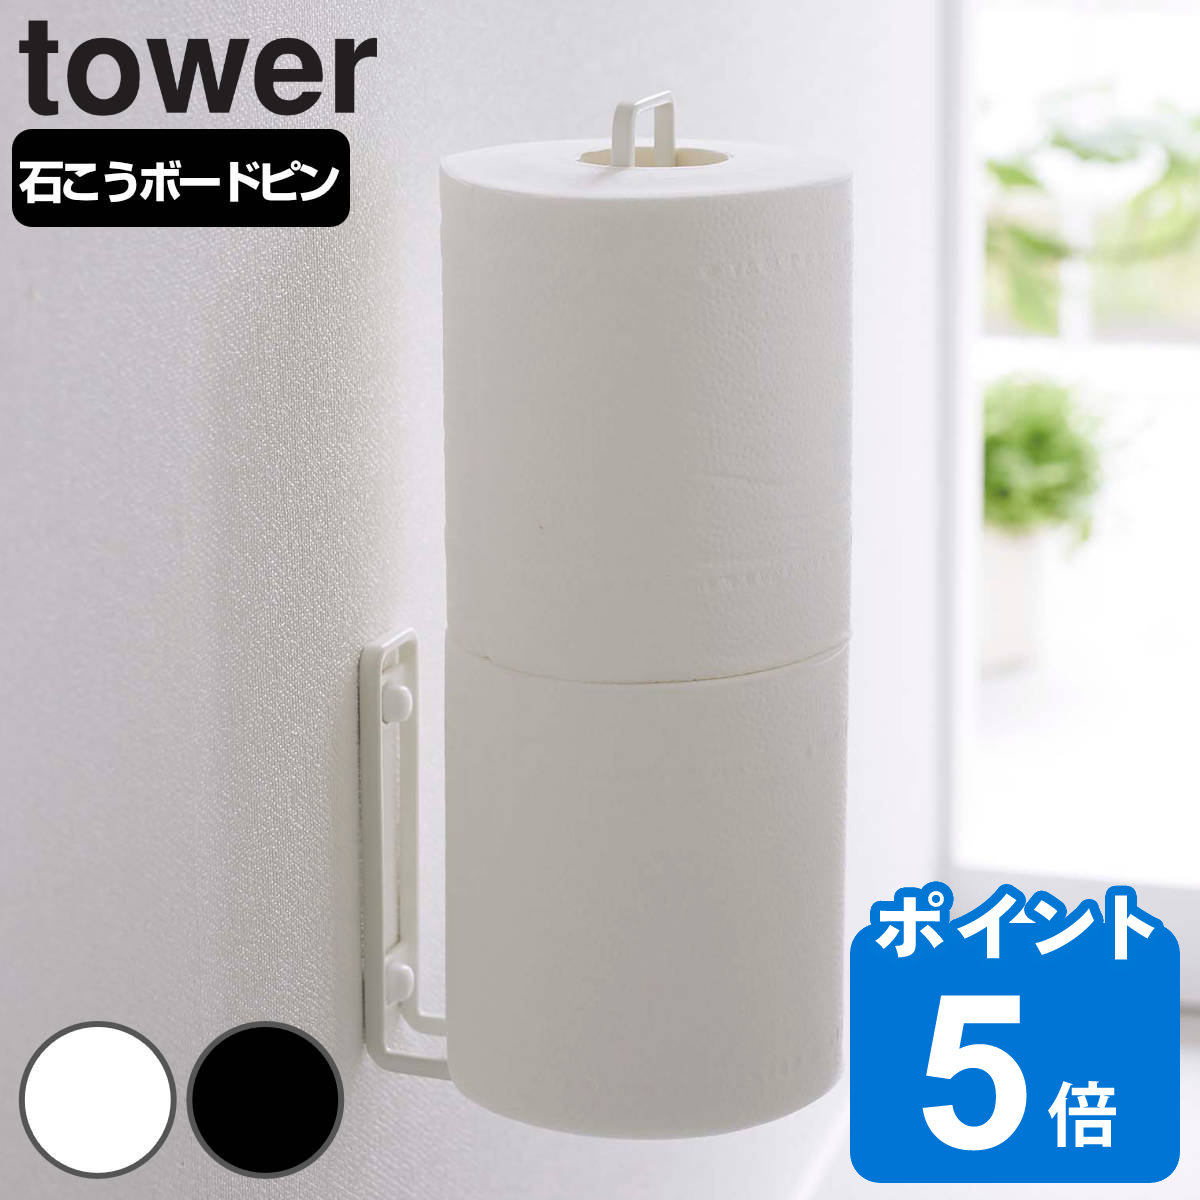 山崎実業 tower ウォールトイレットペーパーホルダー タワー